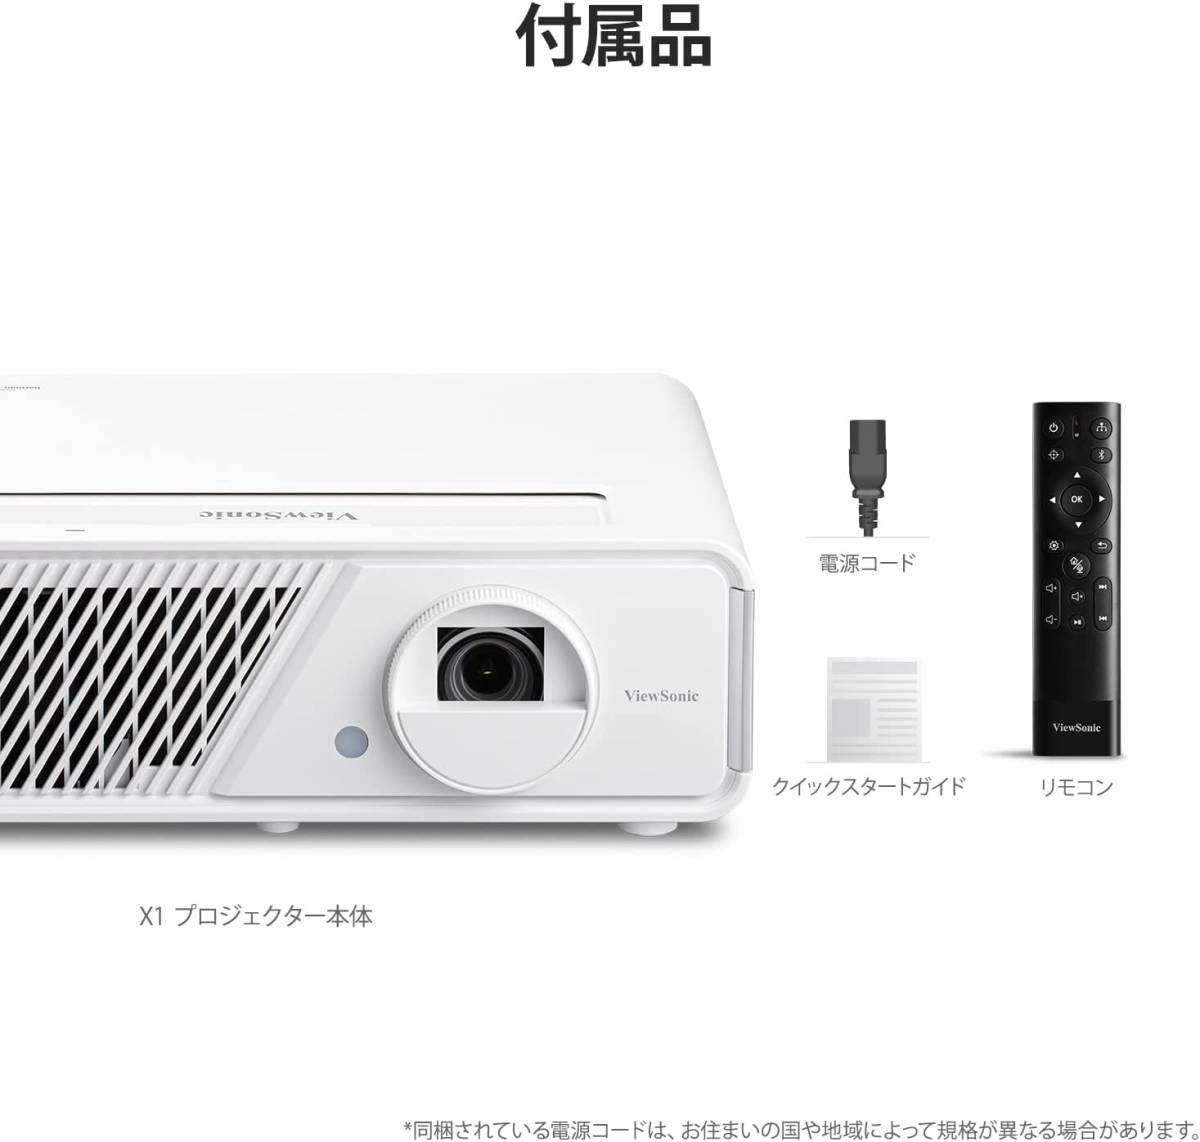 最新型 ViewSonic X1 フルHD LED スマートプロジェクター